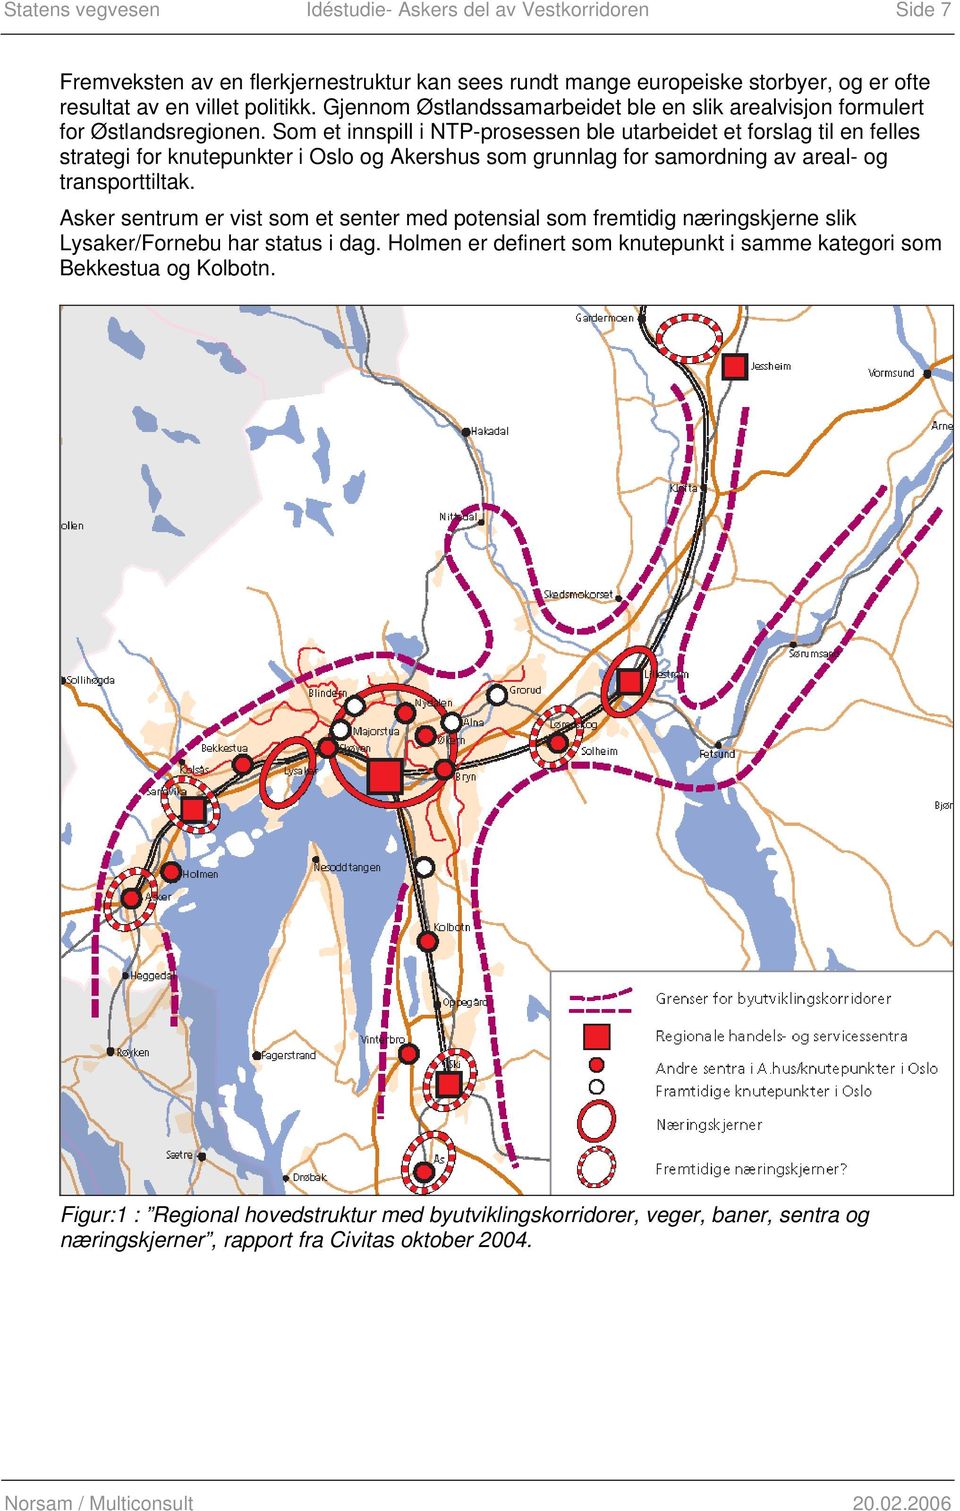 Som et innspill i NTP-prosessen ble utarbeidet et forslag til en felles strategi for knutepunkter i Oslo og Akershus som grunnlag for samordning av areal- og transporttiltak.